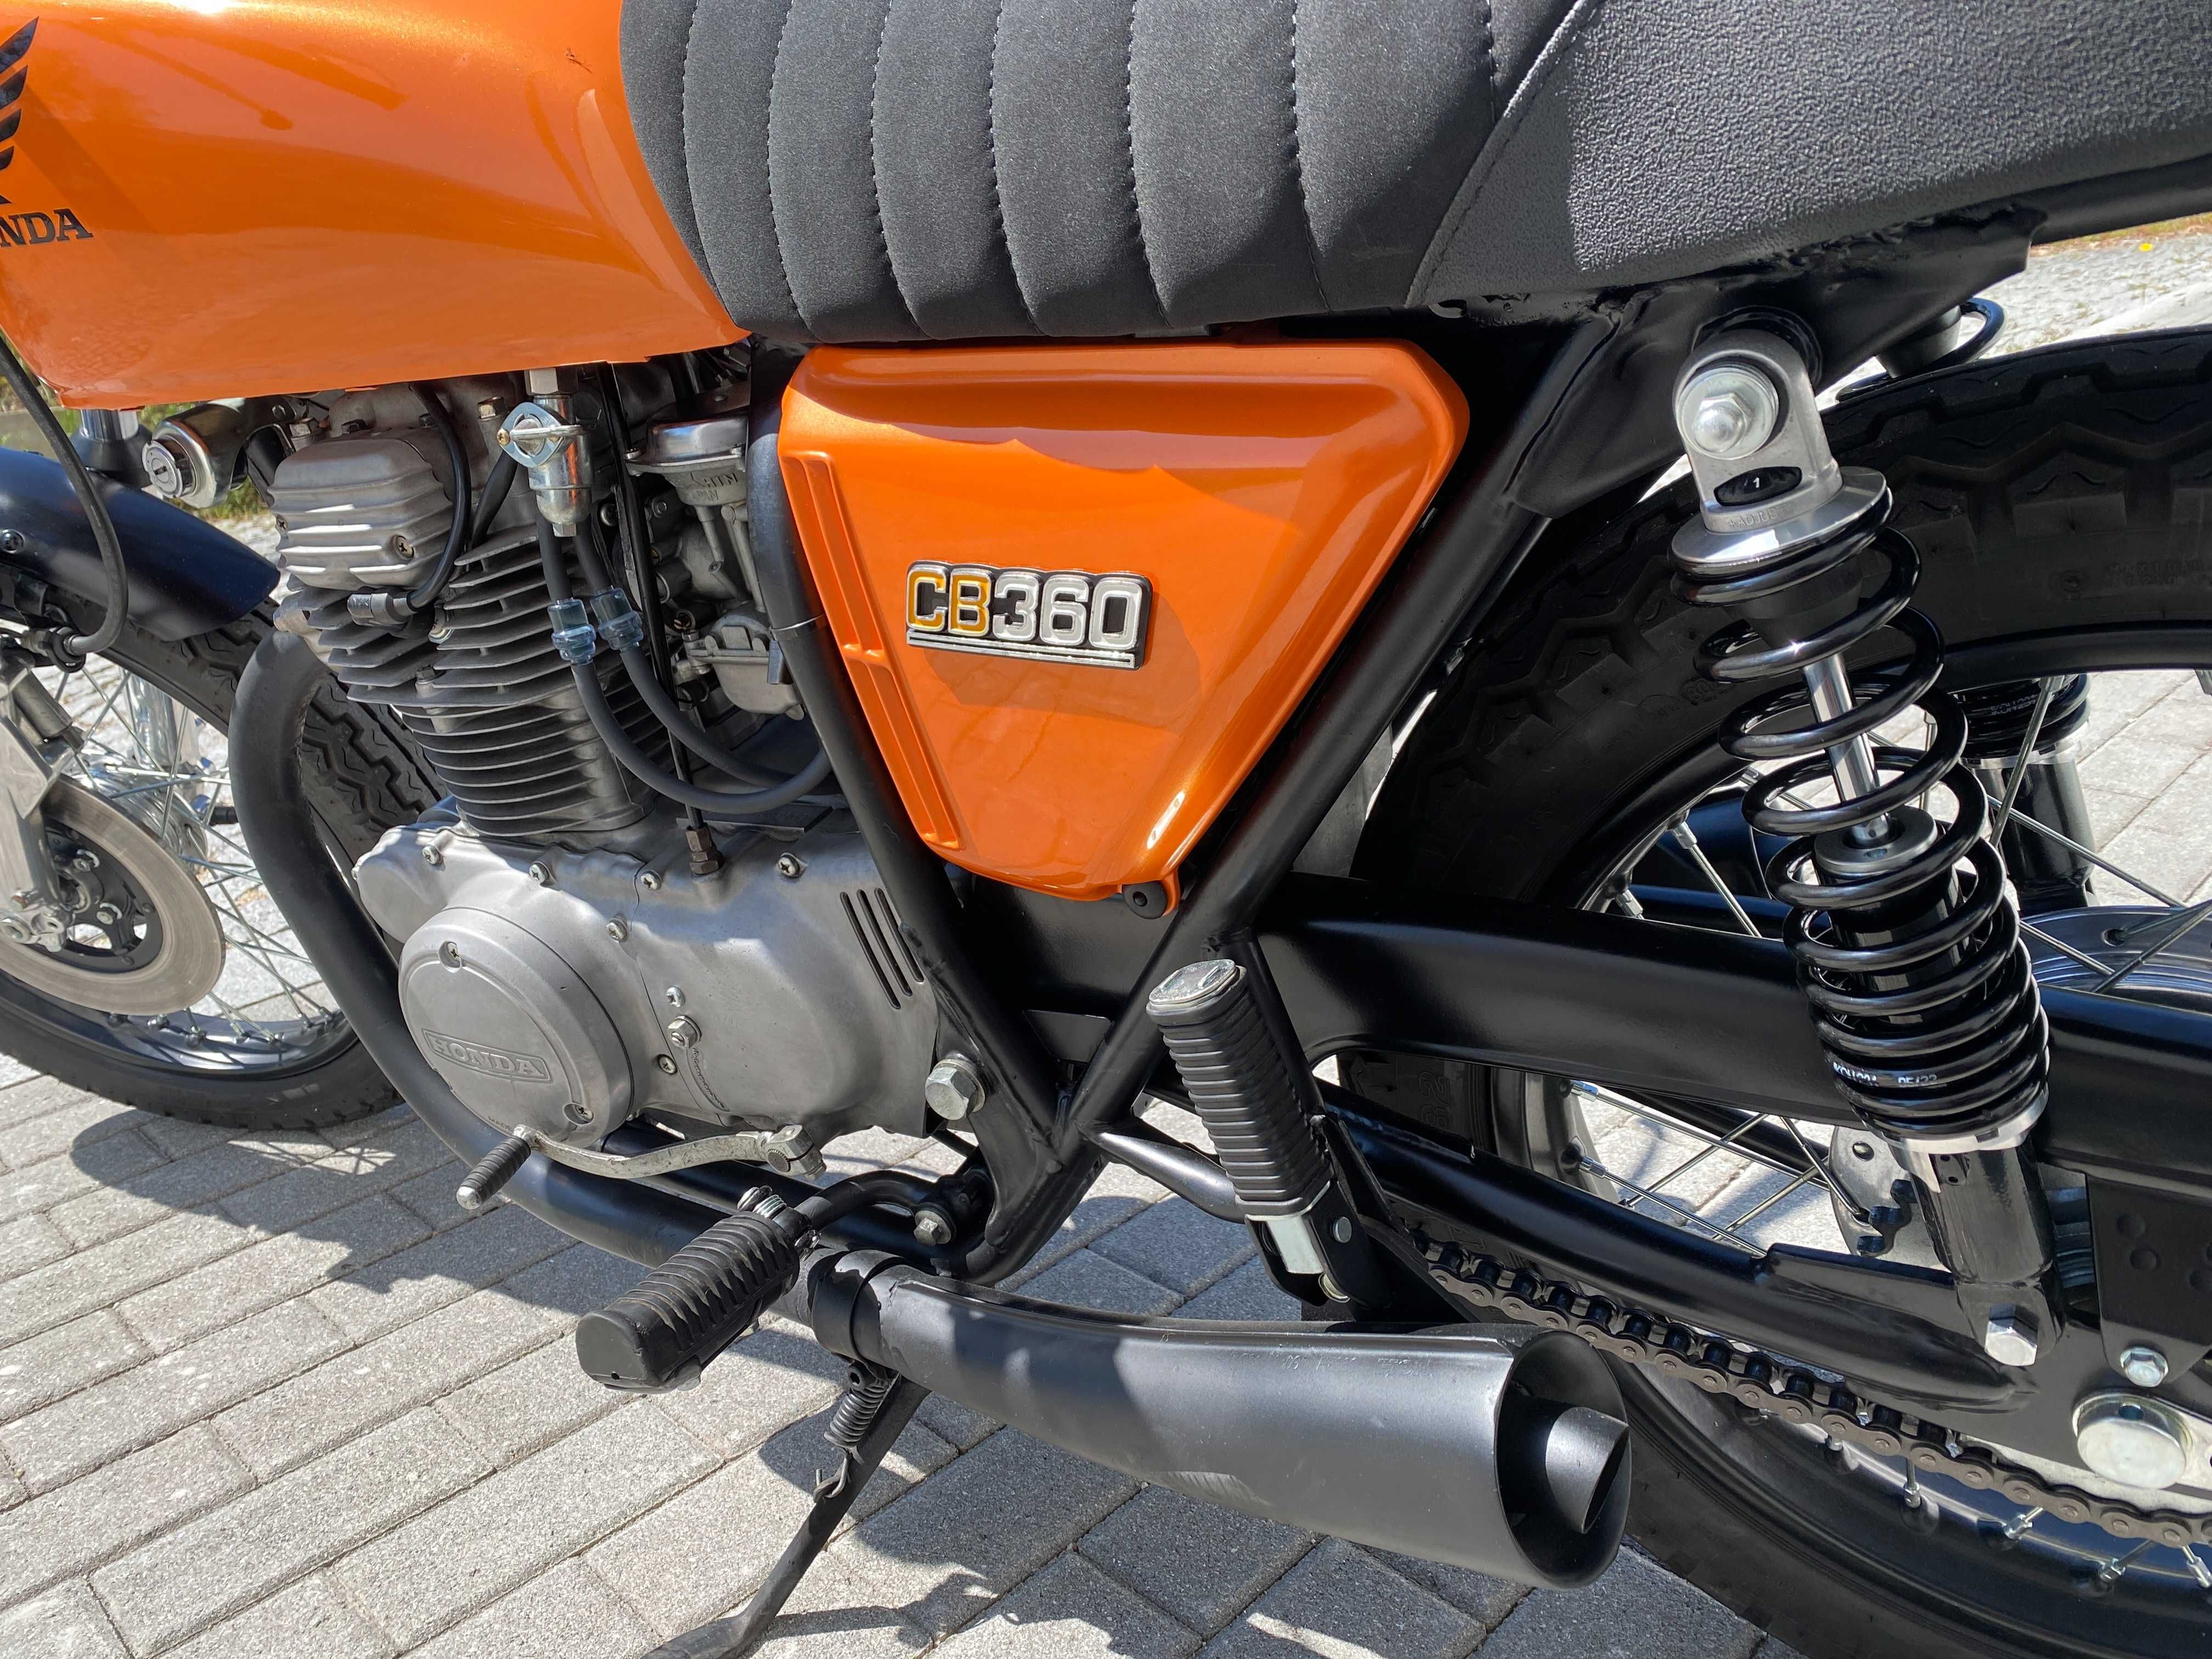 Honda CB 360 – 1974 (Matching numbers)